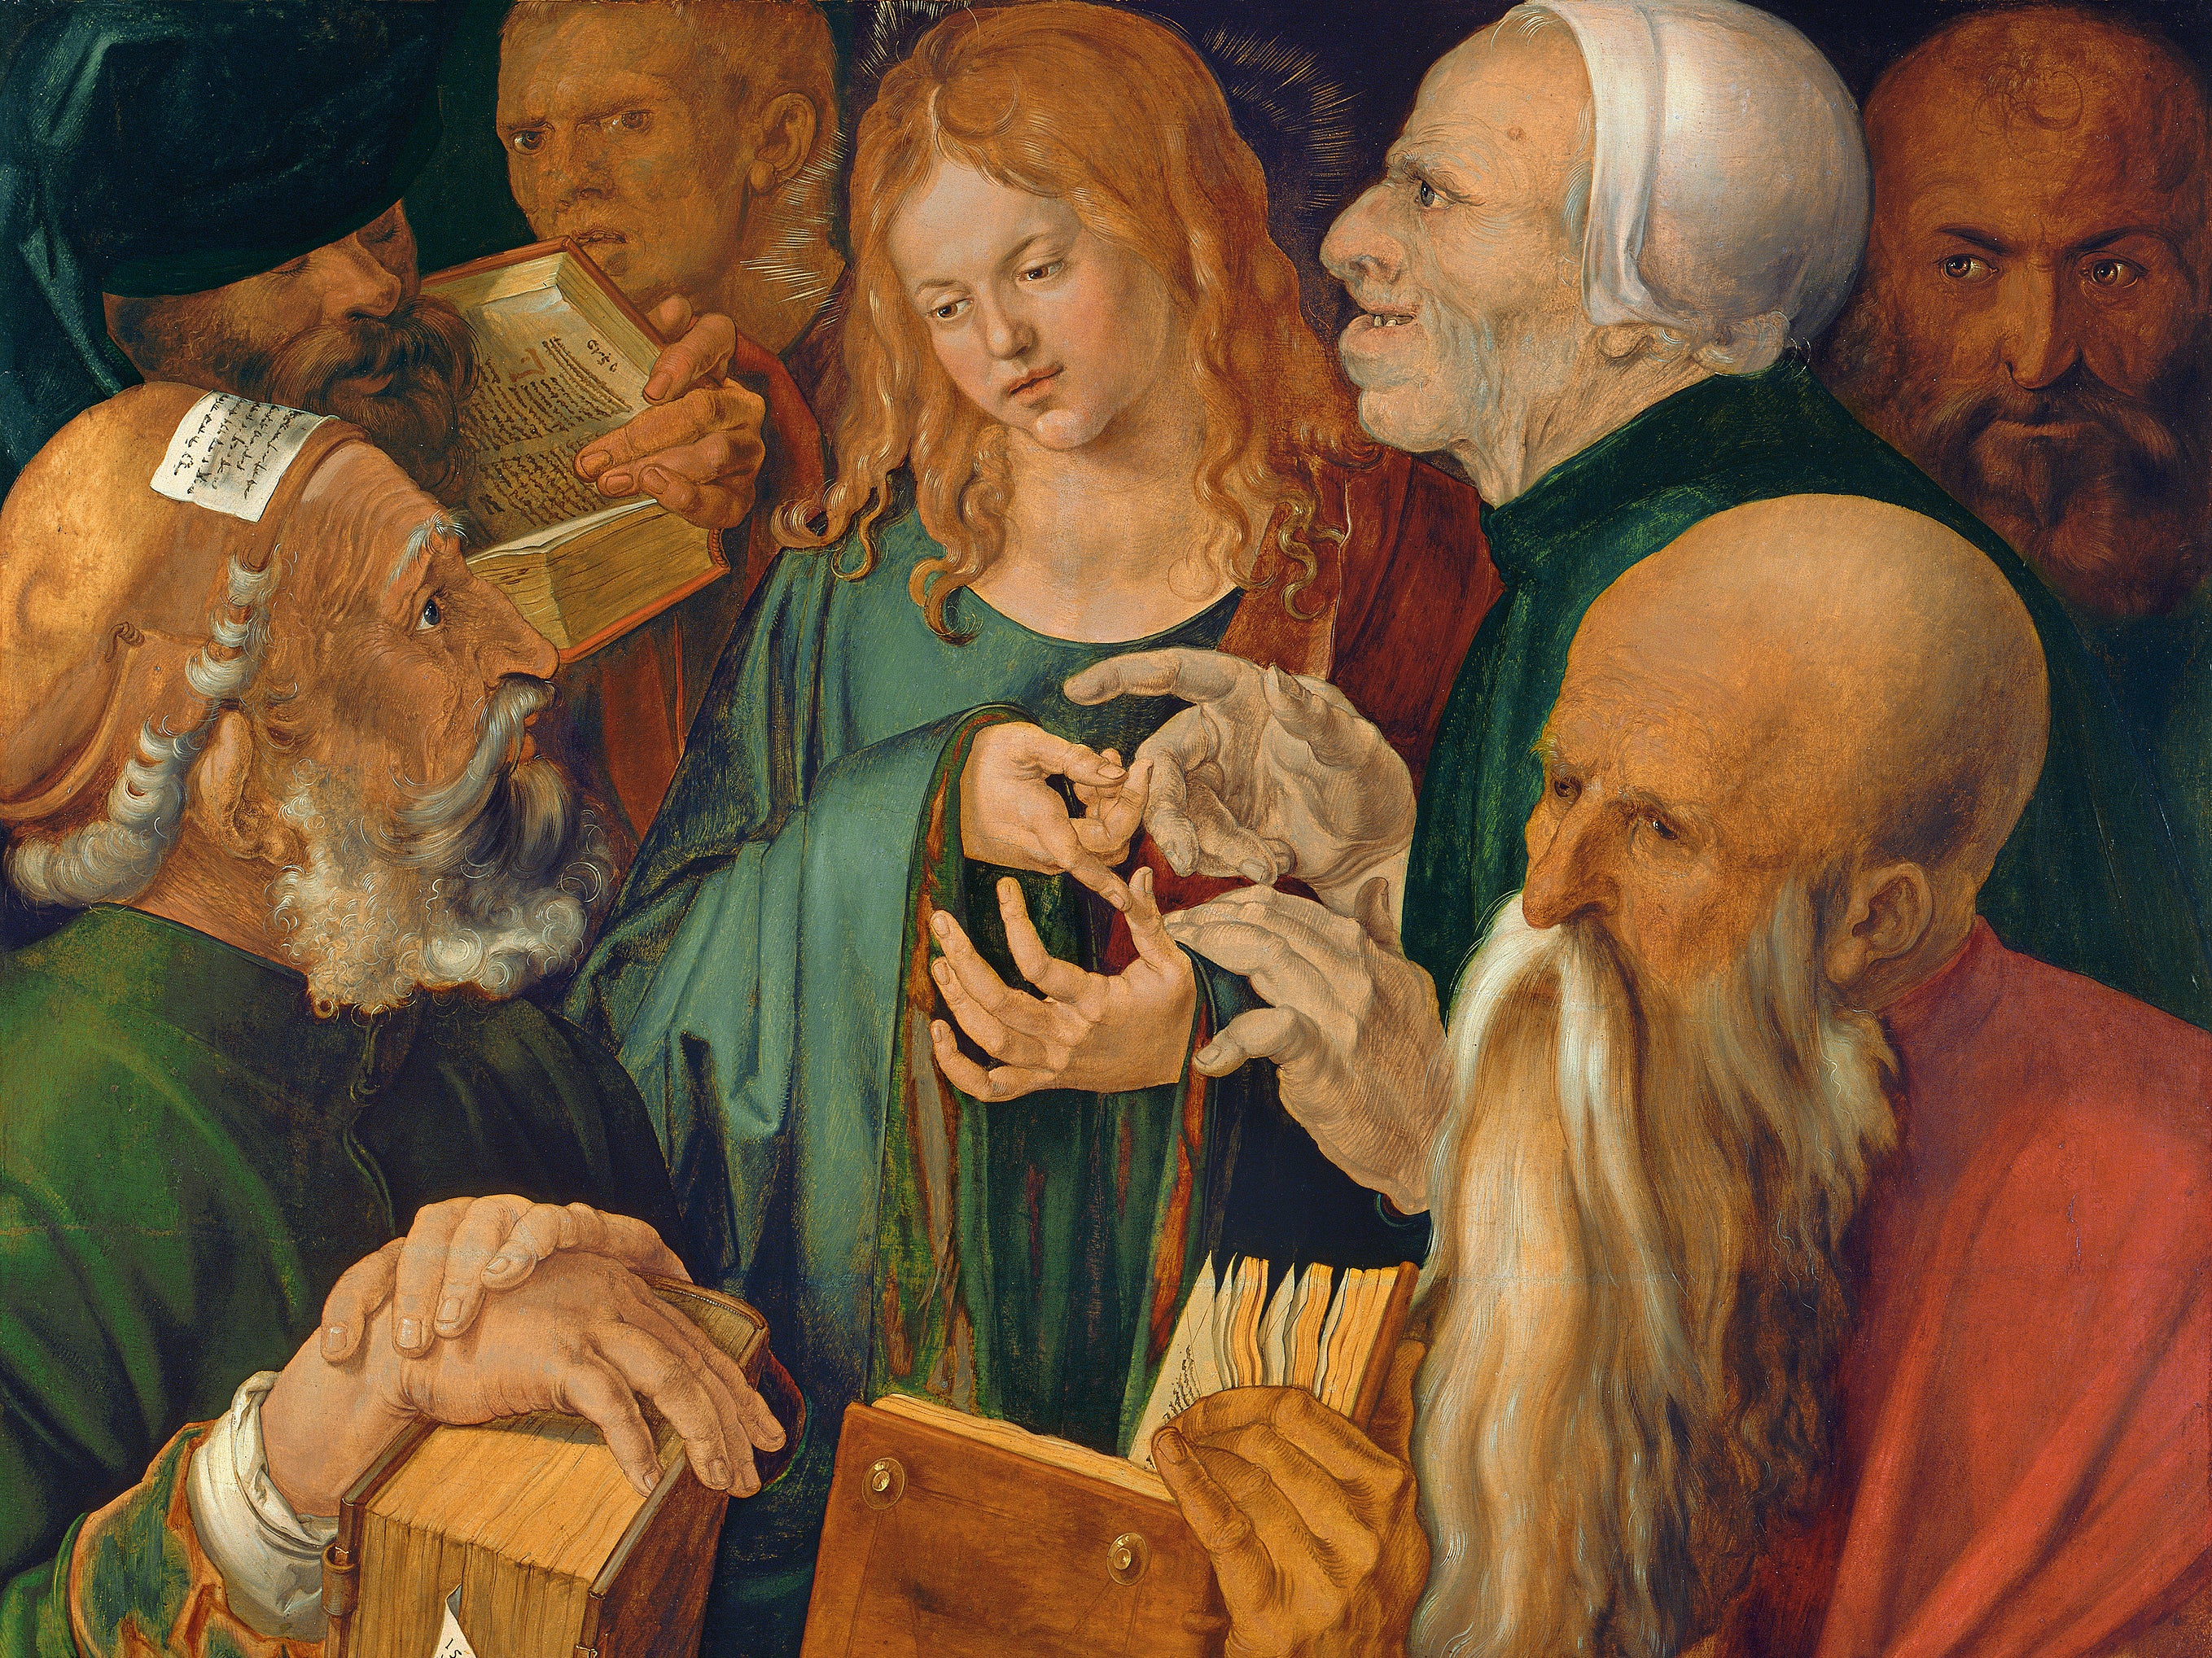 ‘Christ among the Doctors’ by Albrecht Dürer, 1506